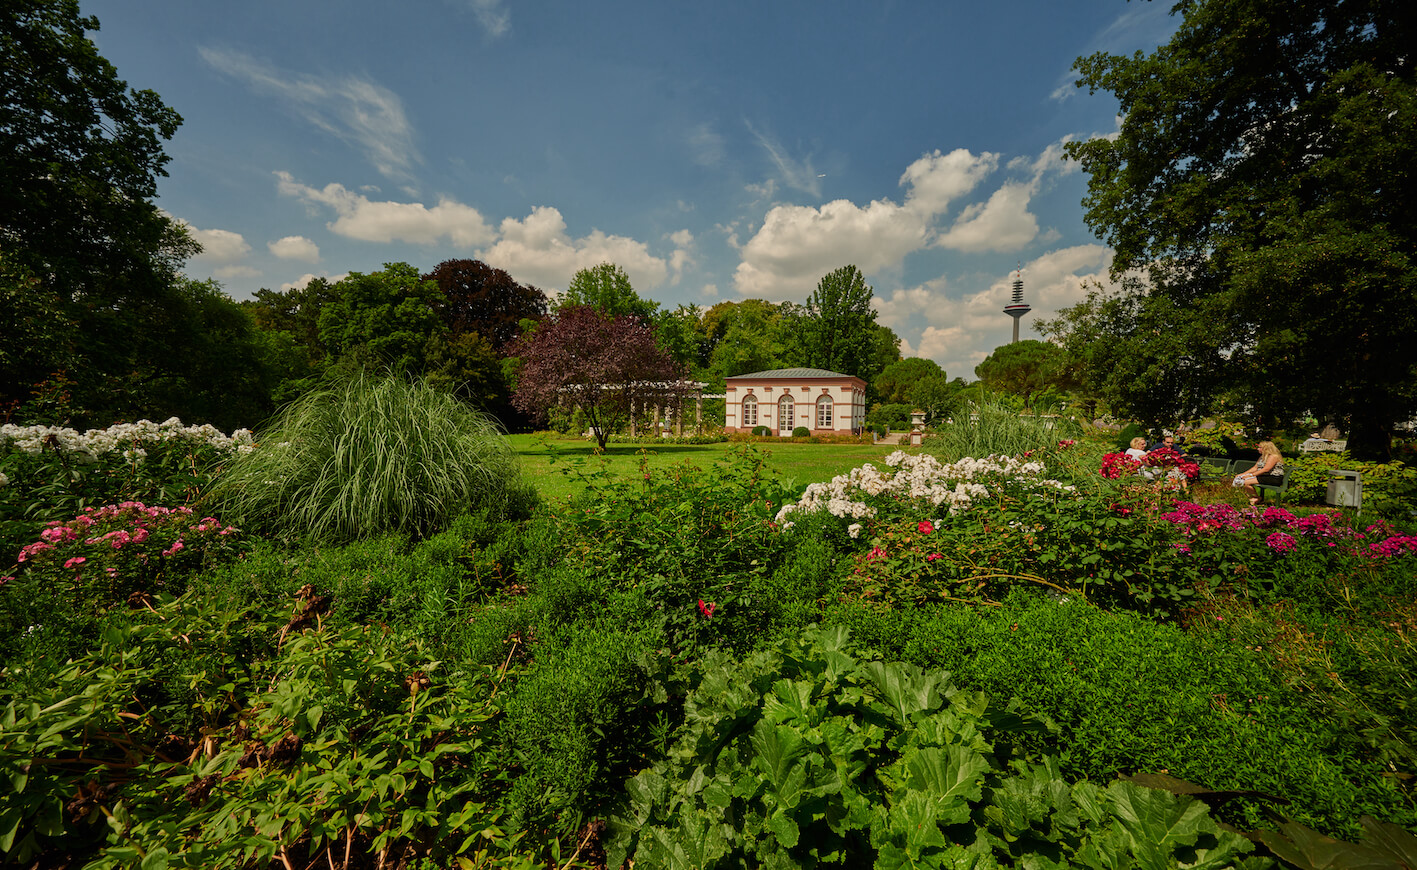 Das Haus Rosenbrunn ist ein kleines Häuschen, das von Natur umgeben ist. Rosen und andere rosafarbene und rote Blumen wachsen neben ihm. Der Fernsehturm ragt im Hintergrund hervor. Auf einer Bank auf der linken Seite genießen einige Besucher:innen das sonnige Wetter.